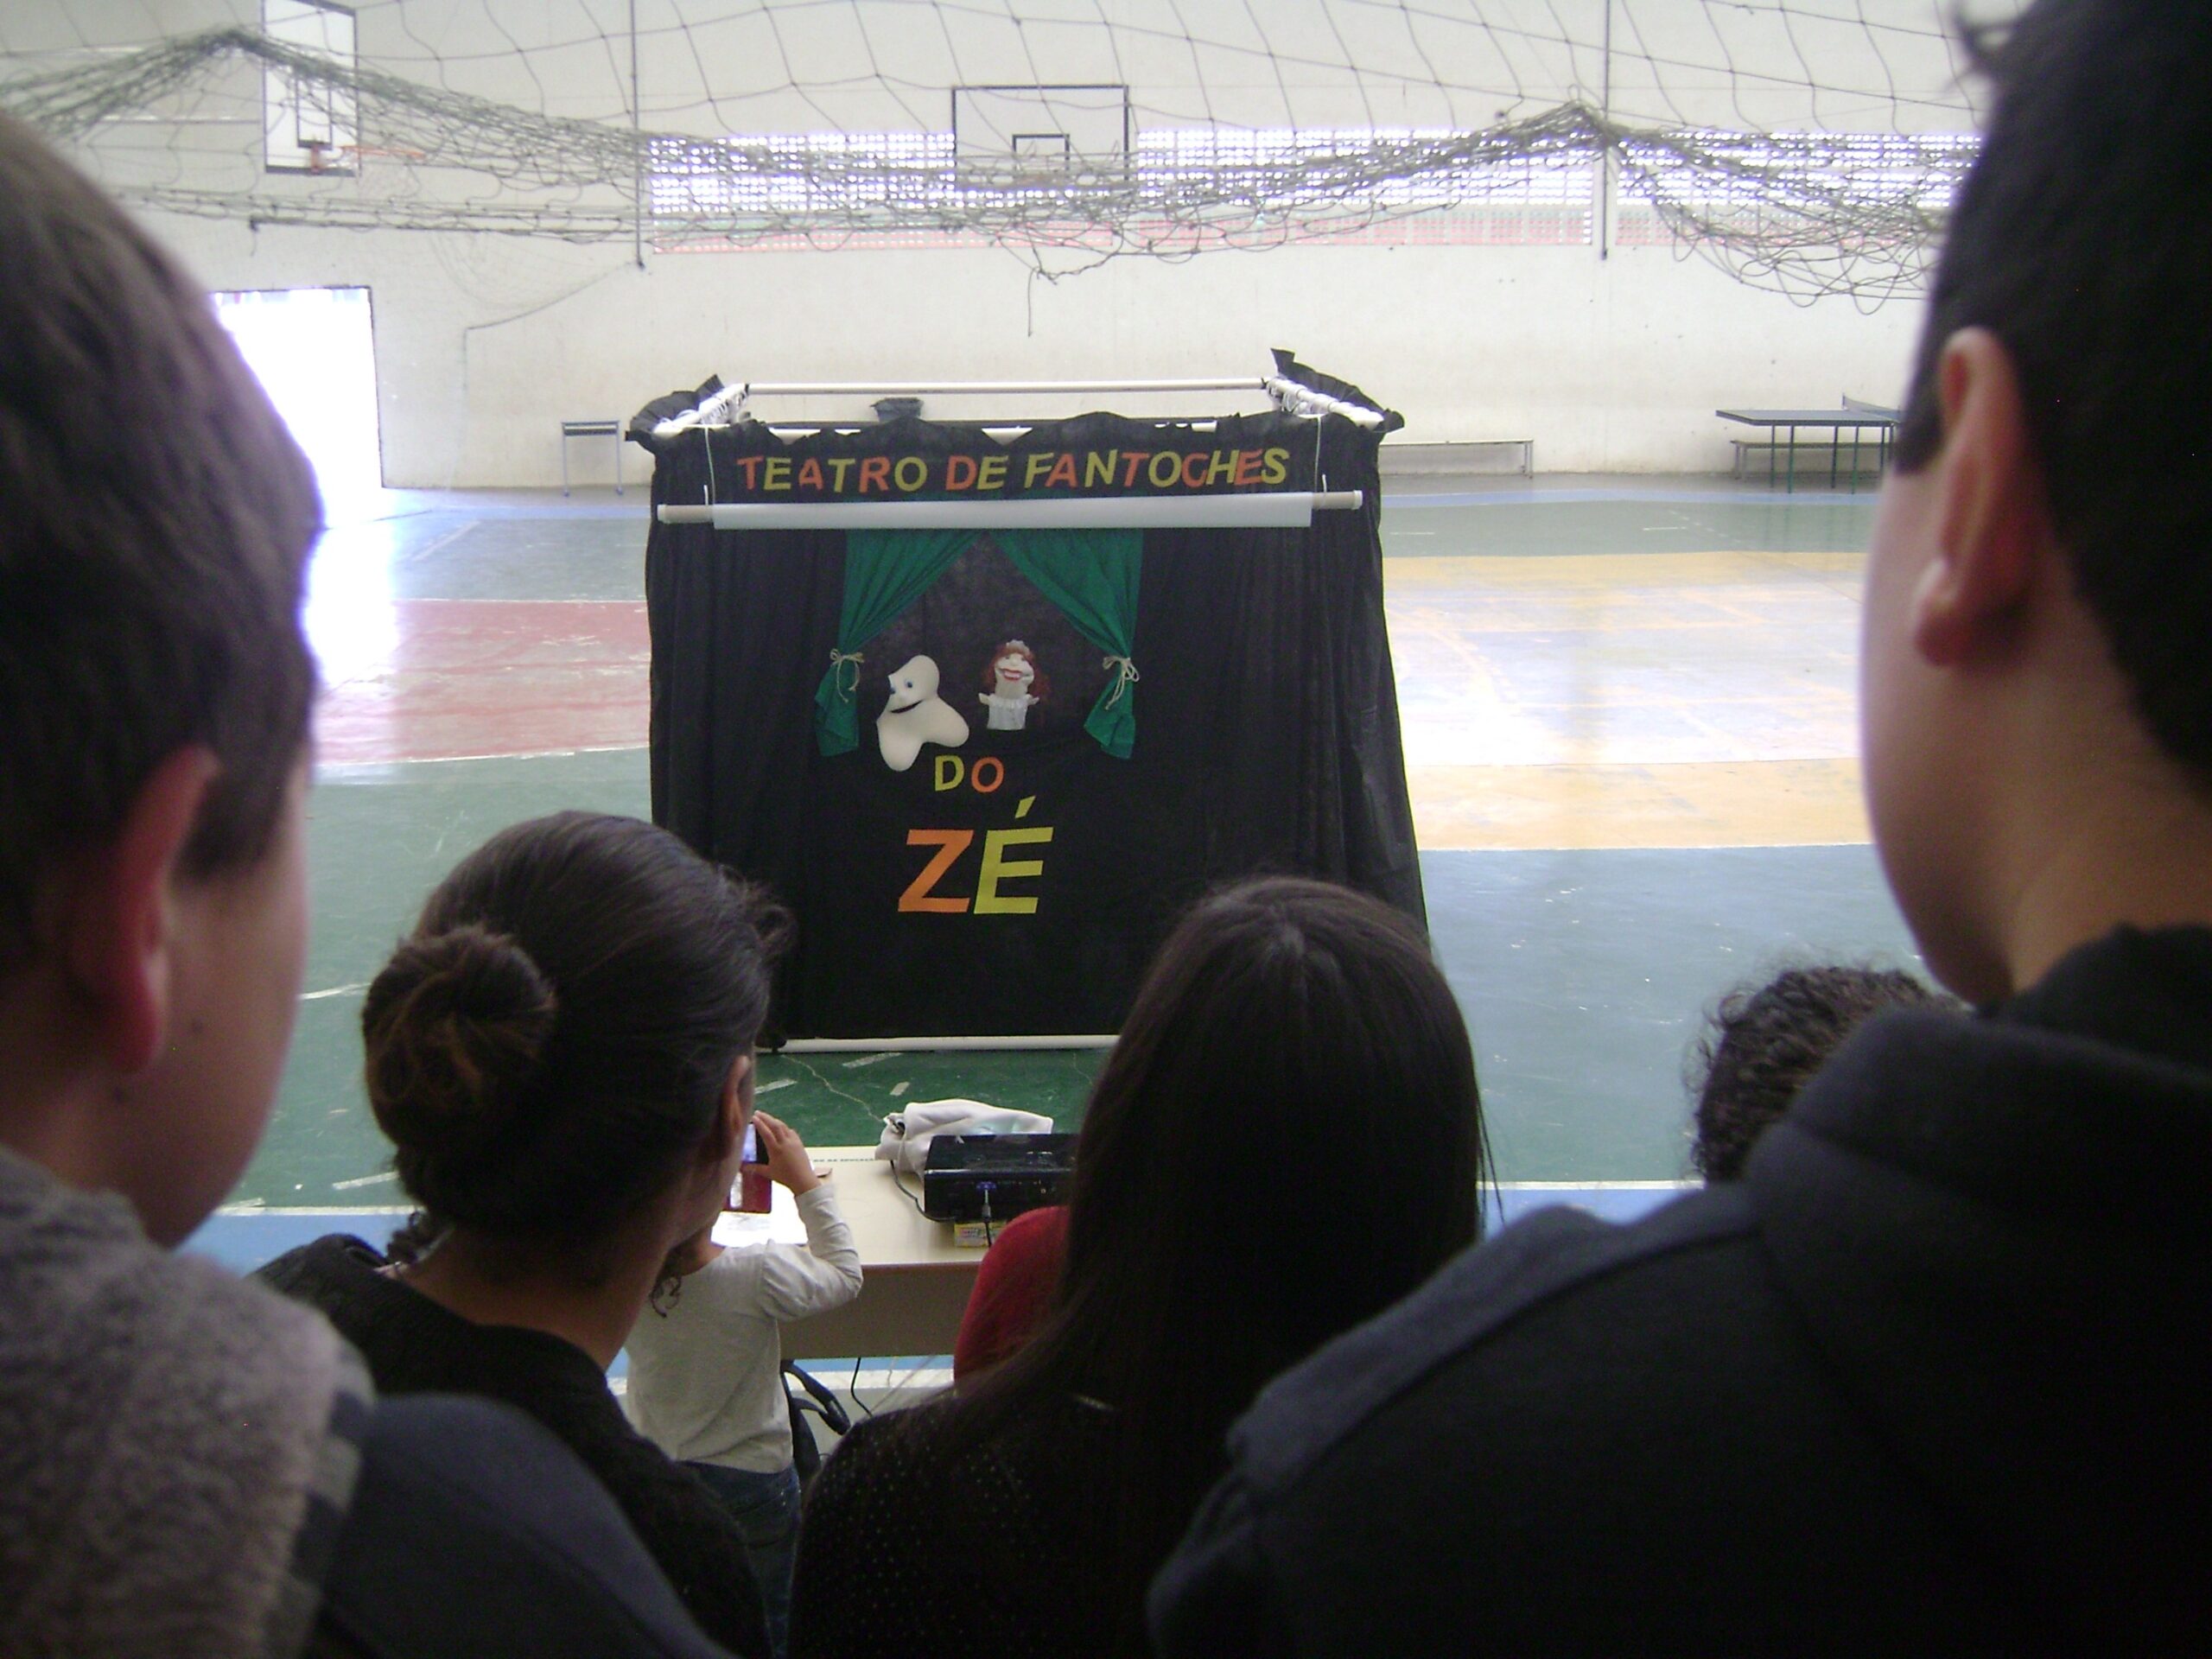 Equipe de saúde bucal da UBS José Amândio realiza mais um espetáculo do “Teatro de Fantoches do Zé”.